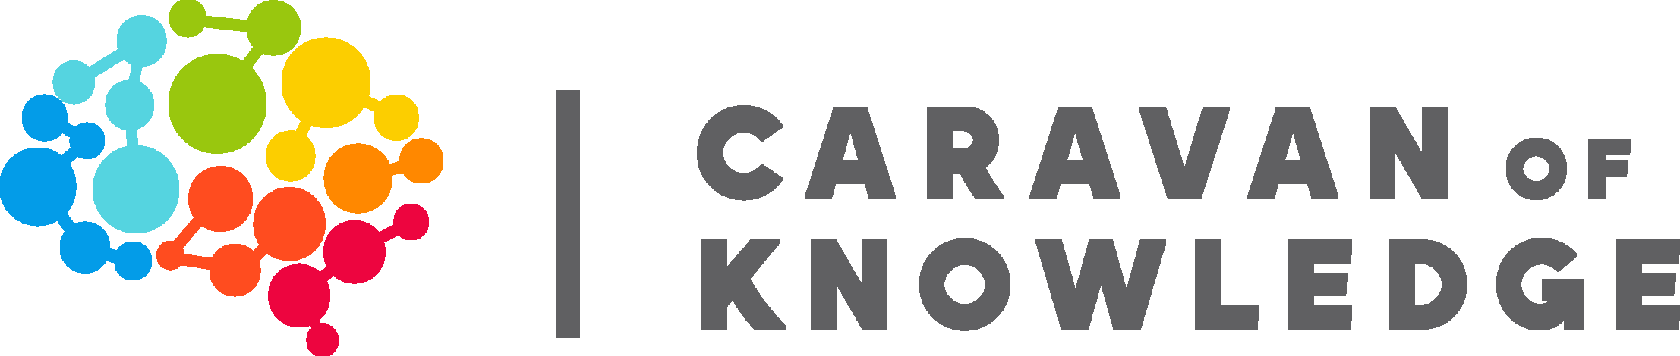 CaravanOfKnowledge